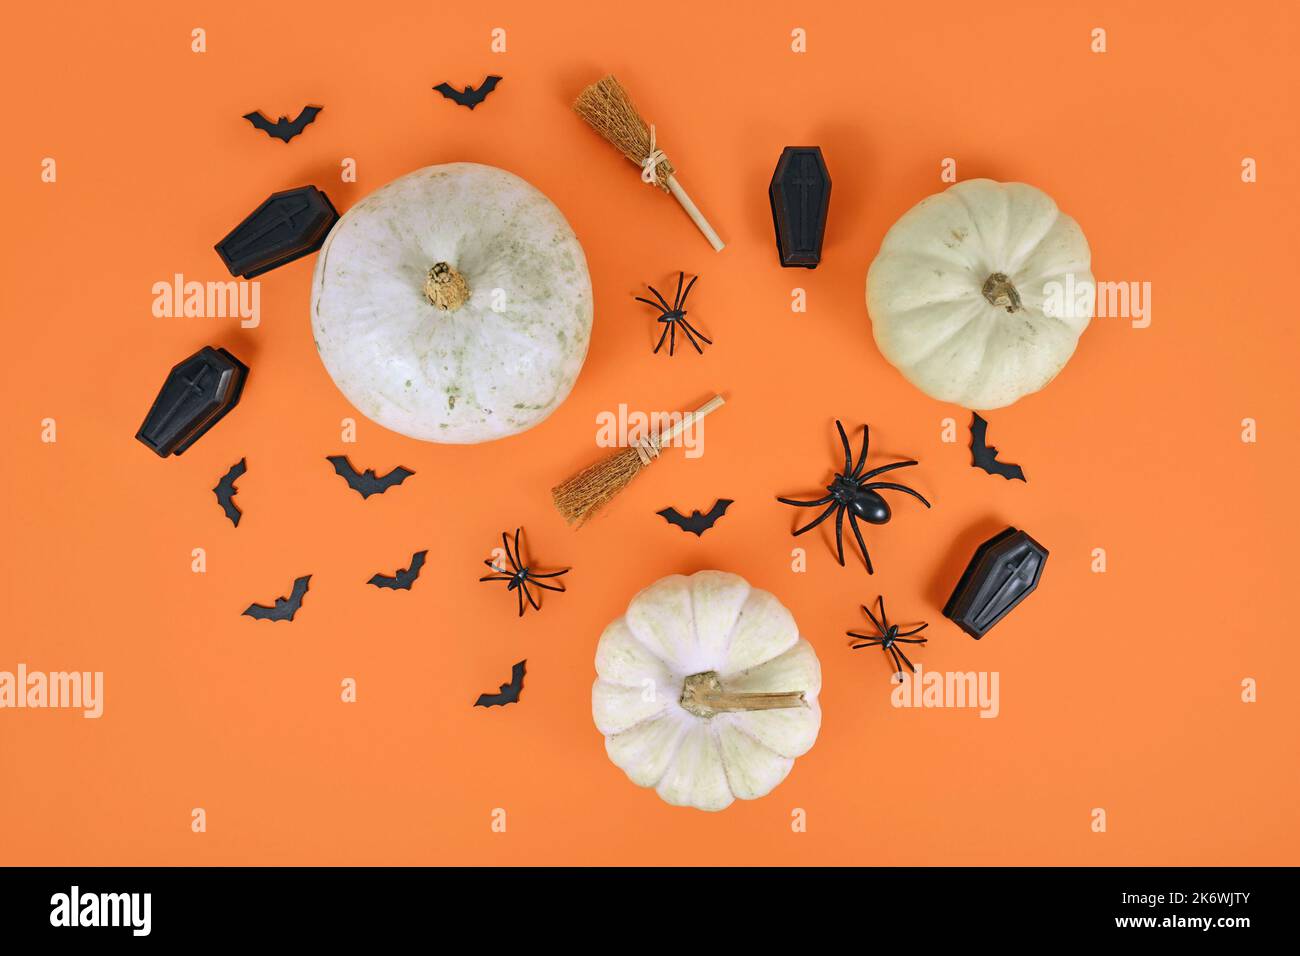 Arrangement d'Halloween avec des citrouilles blanches, des araignées noires, des chauves-souris et des cercueils et des balais de sorcière sur fond orange Banque D'Images